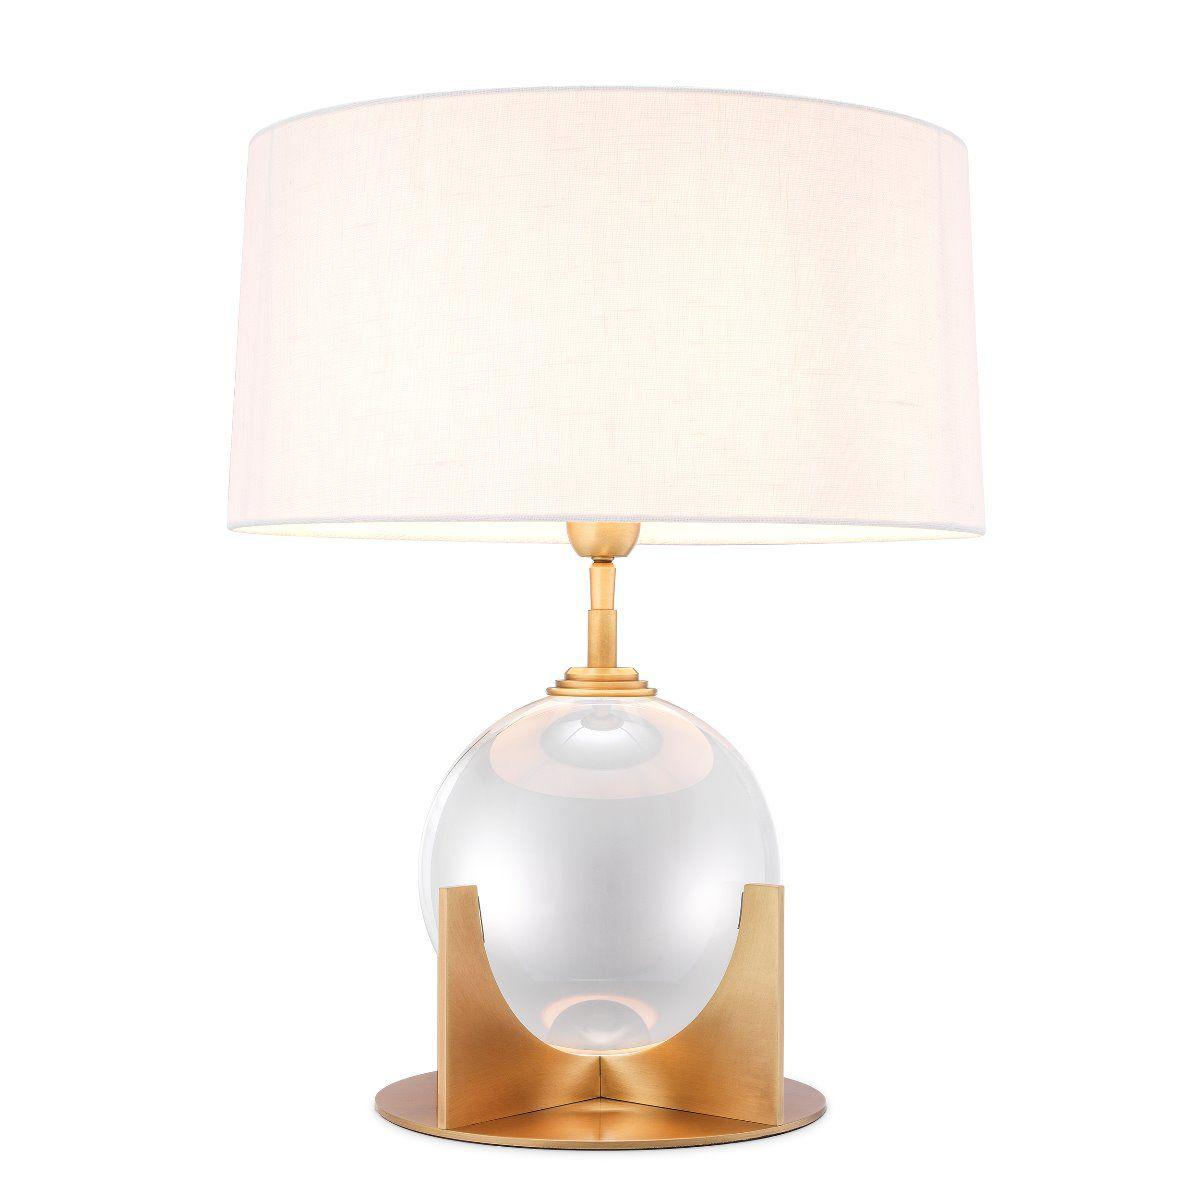 Купить Настольная лампа Table Lamp Fontelina в интернет-магазине roooms.ru